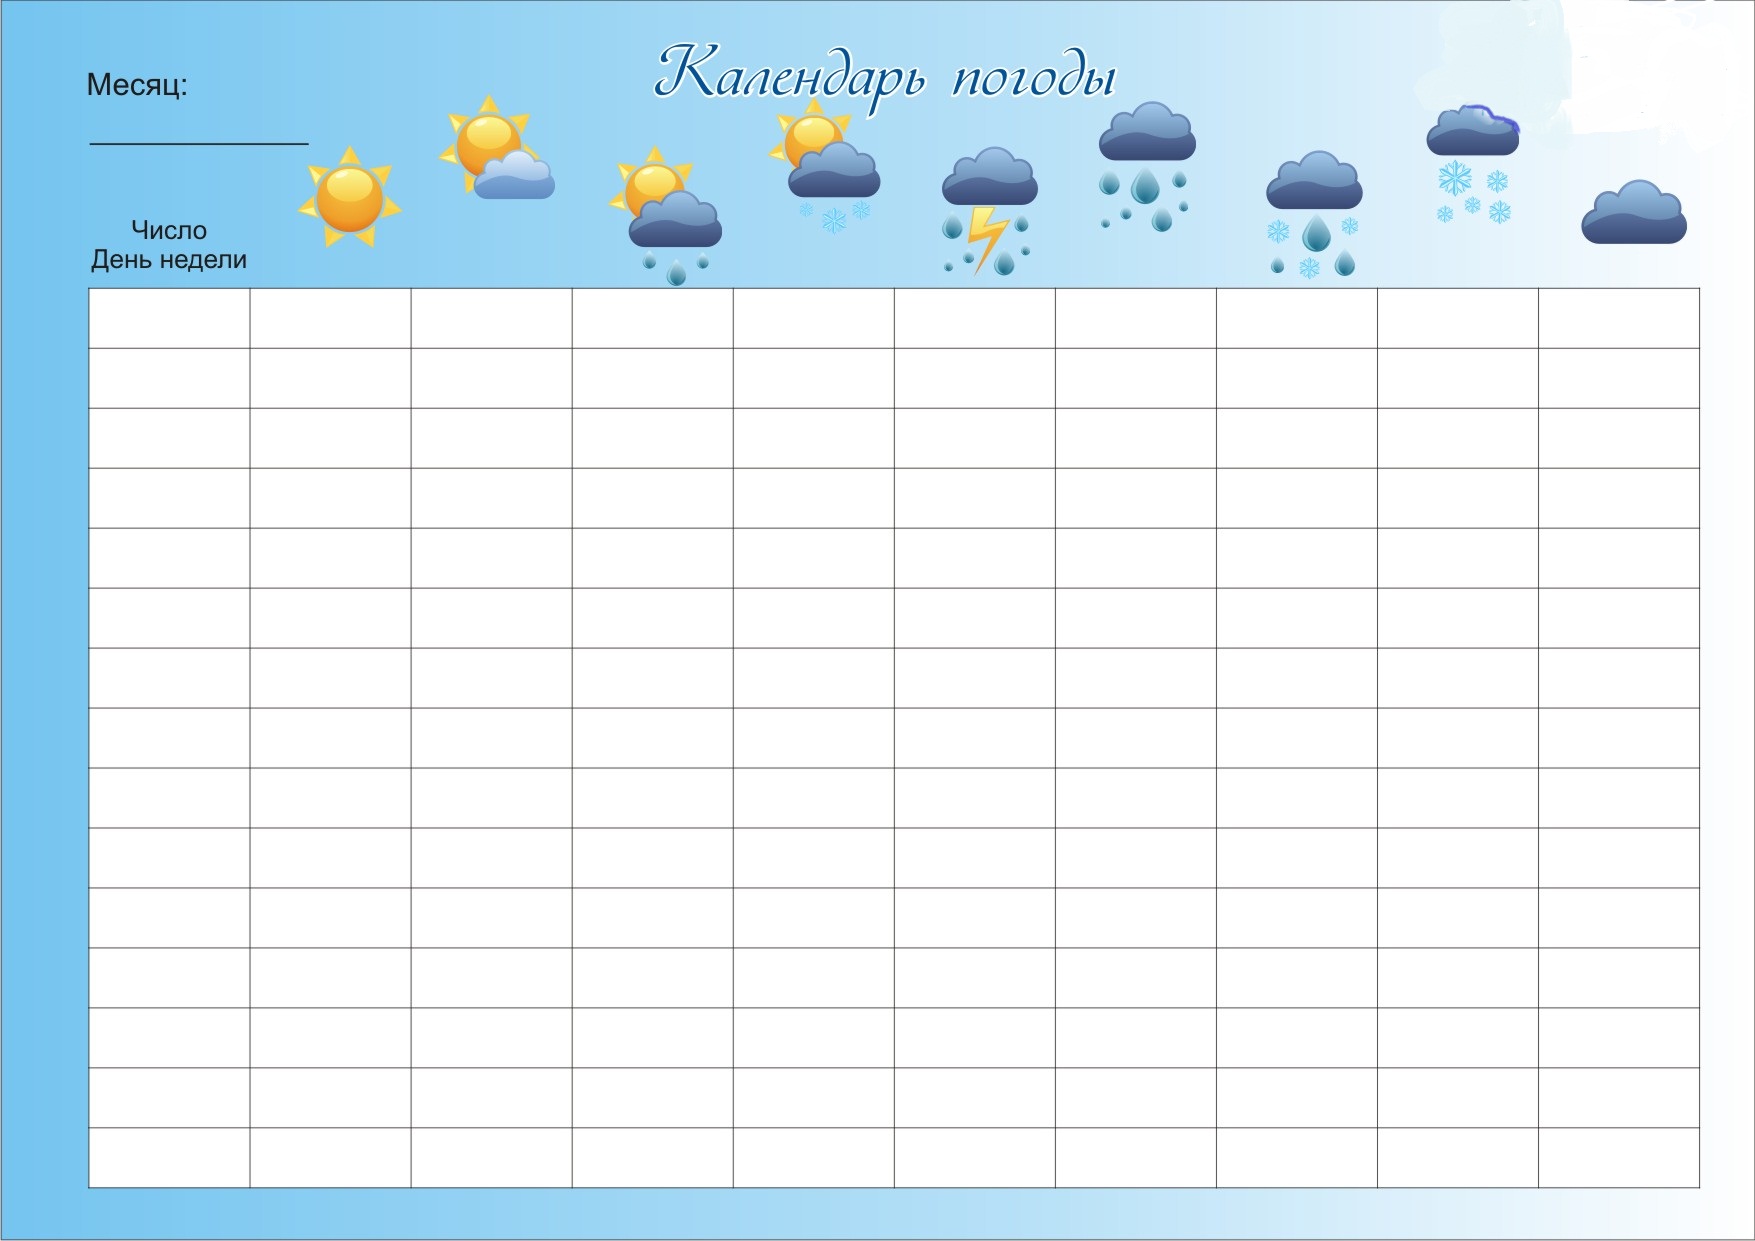 Погода на 9 недель. Календарь наблюдений за погодой. Календарь погоды для детского сада. Наблюдение за погодой в детском саду. Погодный календарь для детей.